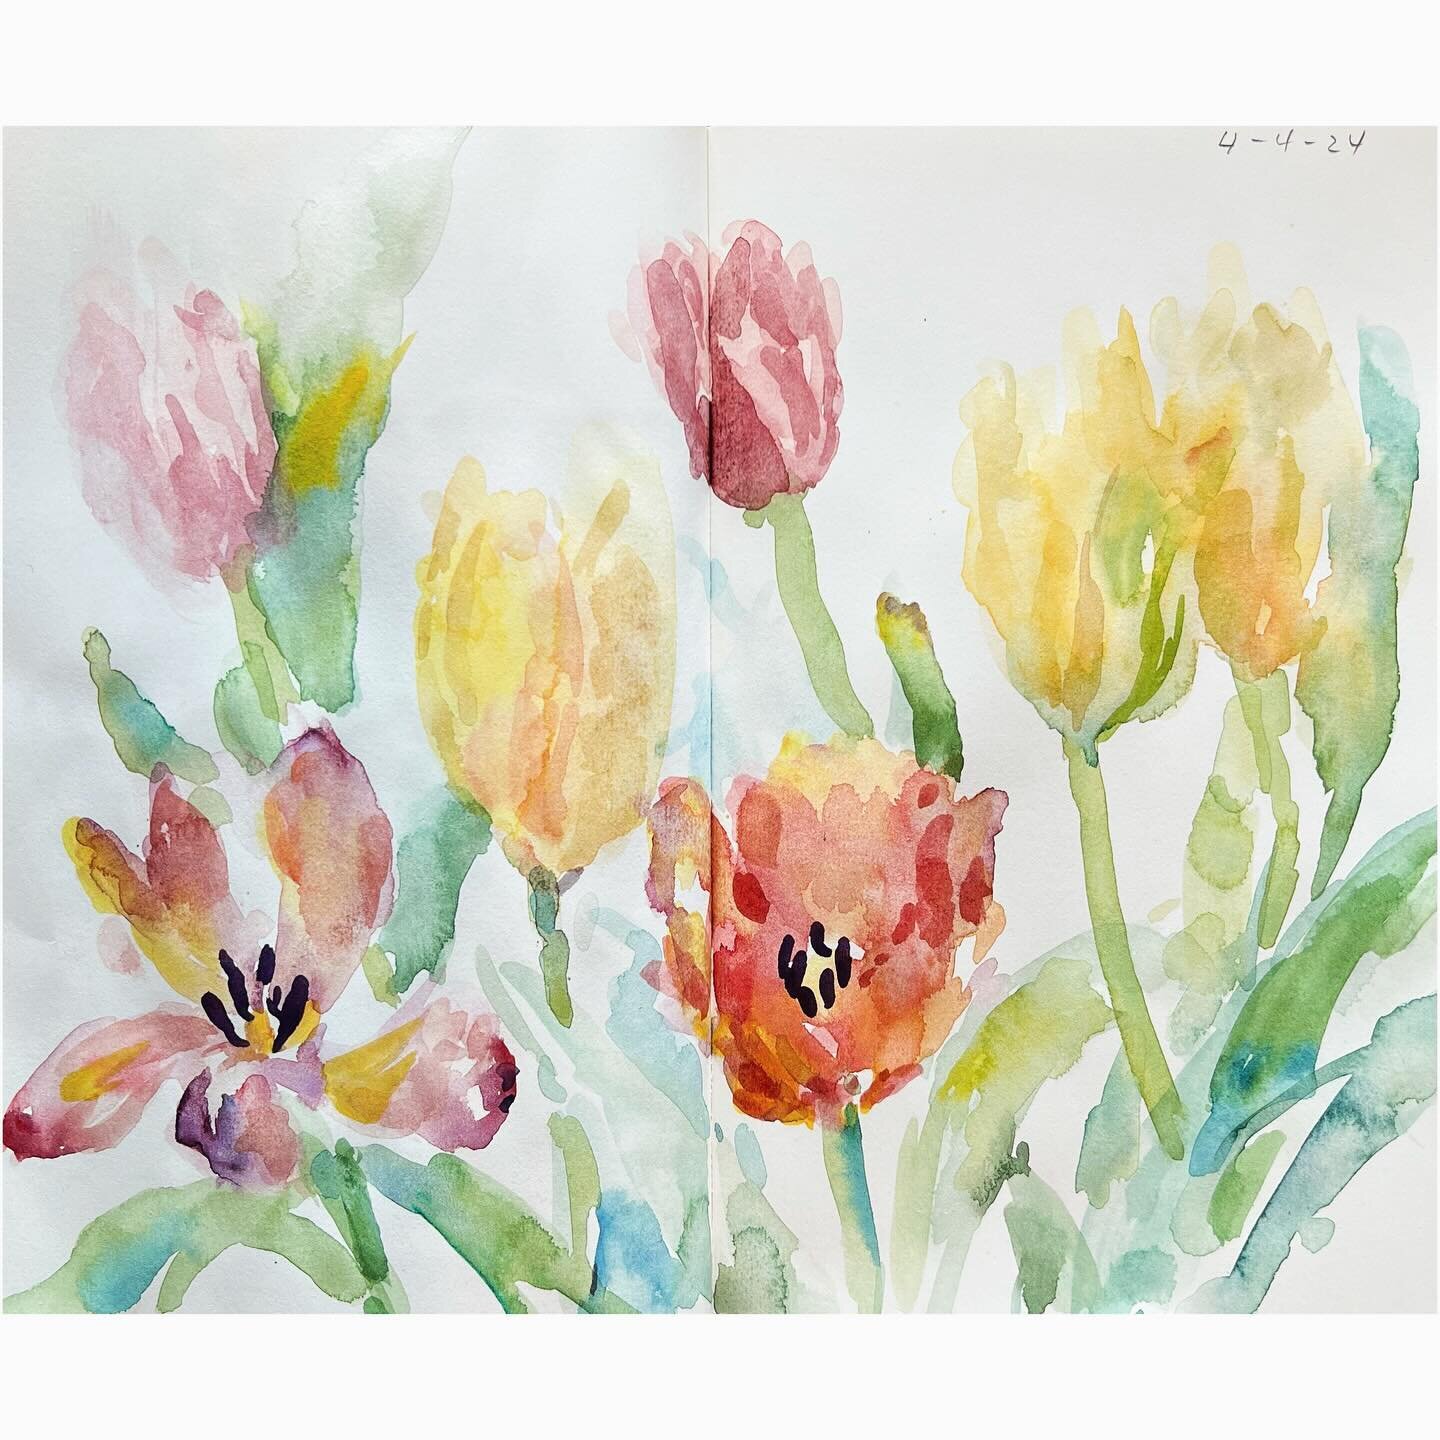 Irresistible tulips 💐 

#tulips #watercolorpainting
#watercolour #sketchbook #flowerpainting